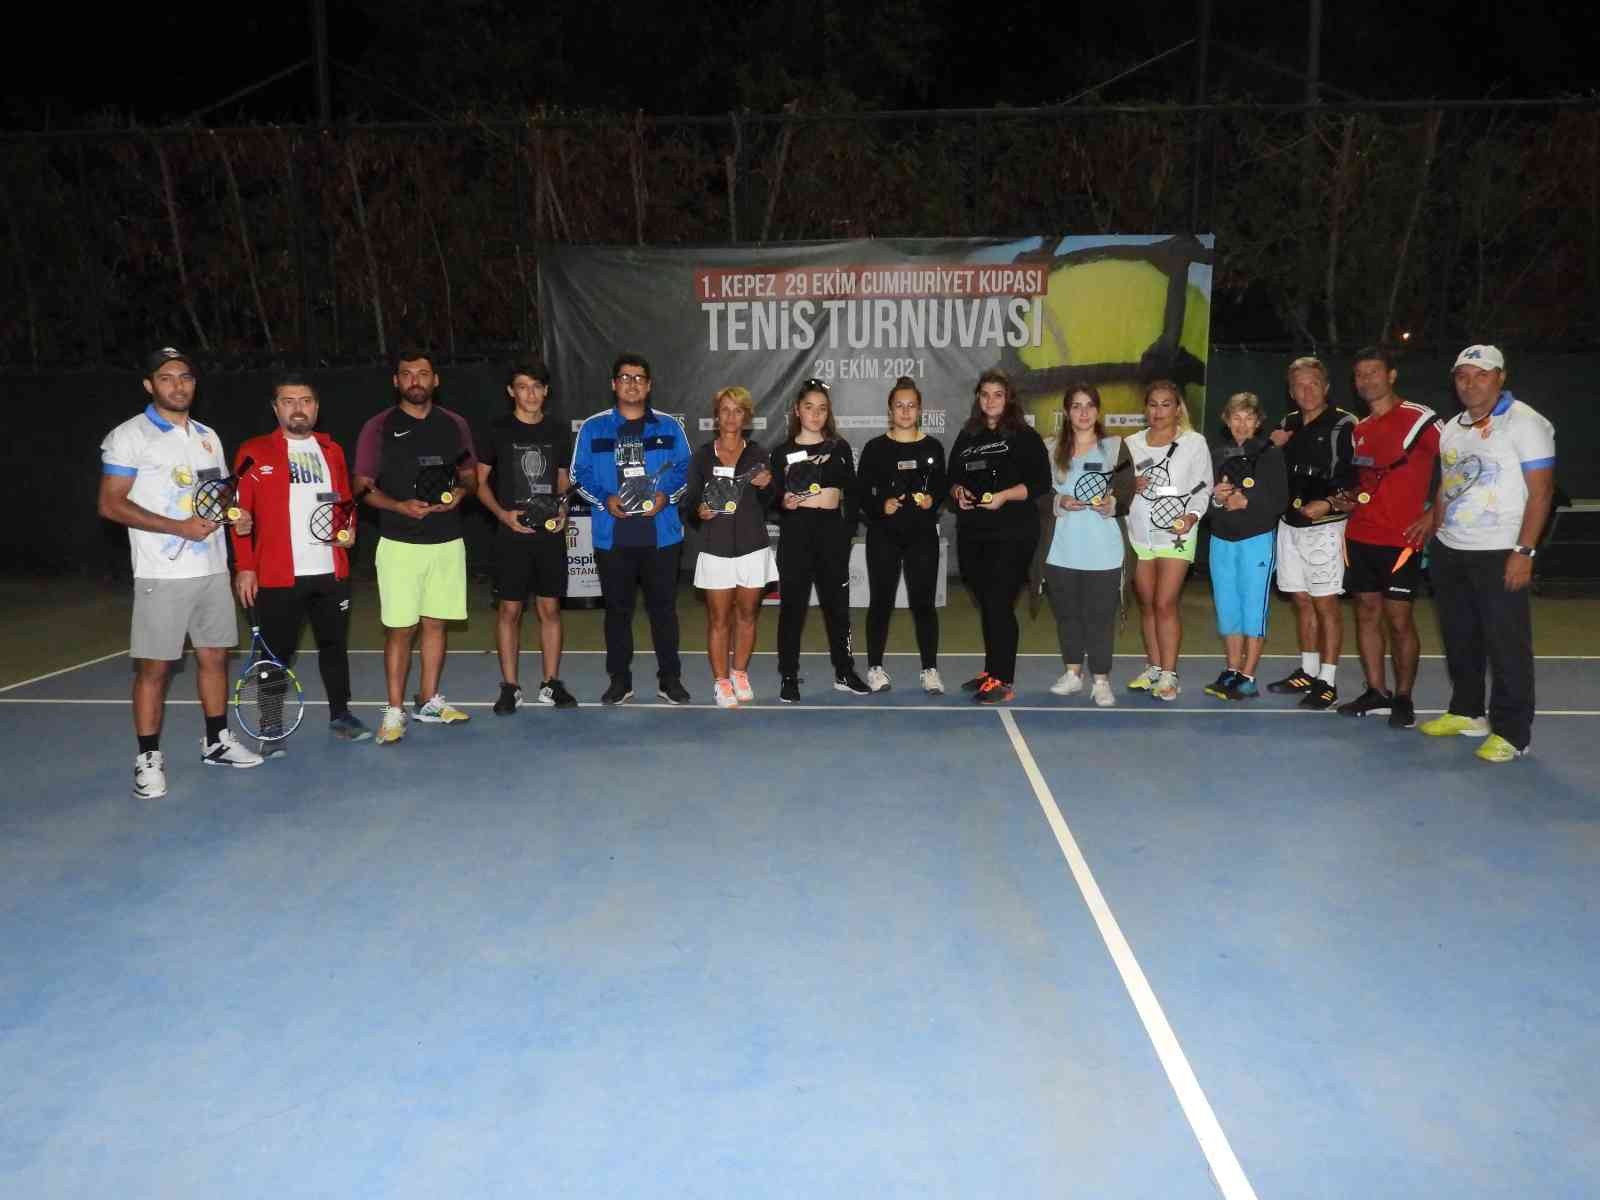 29 Ekim Cumhuriyet Kupası Tenis Turnuvası’nın kupaları sahiplerini buldu #antalya